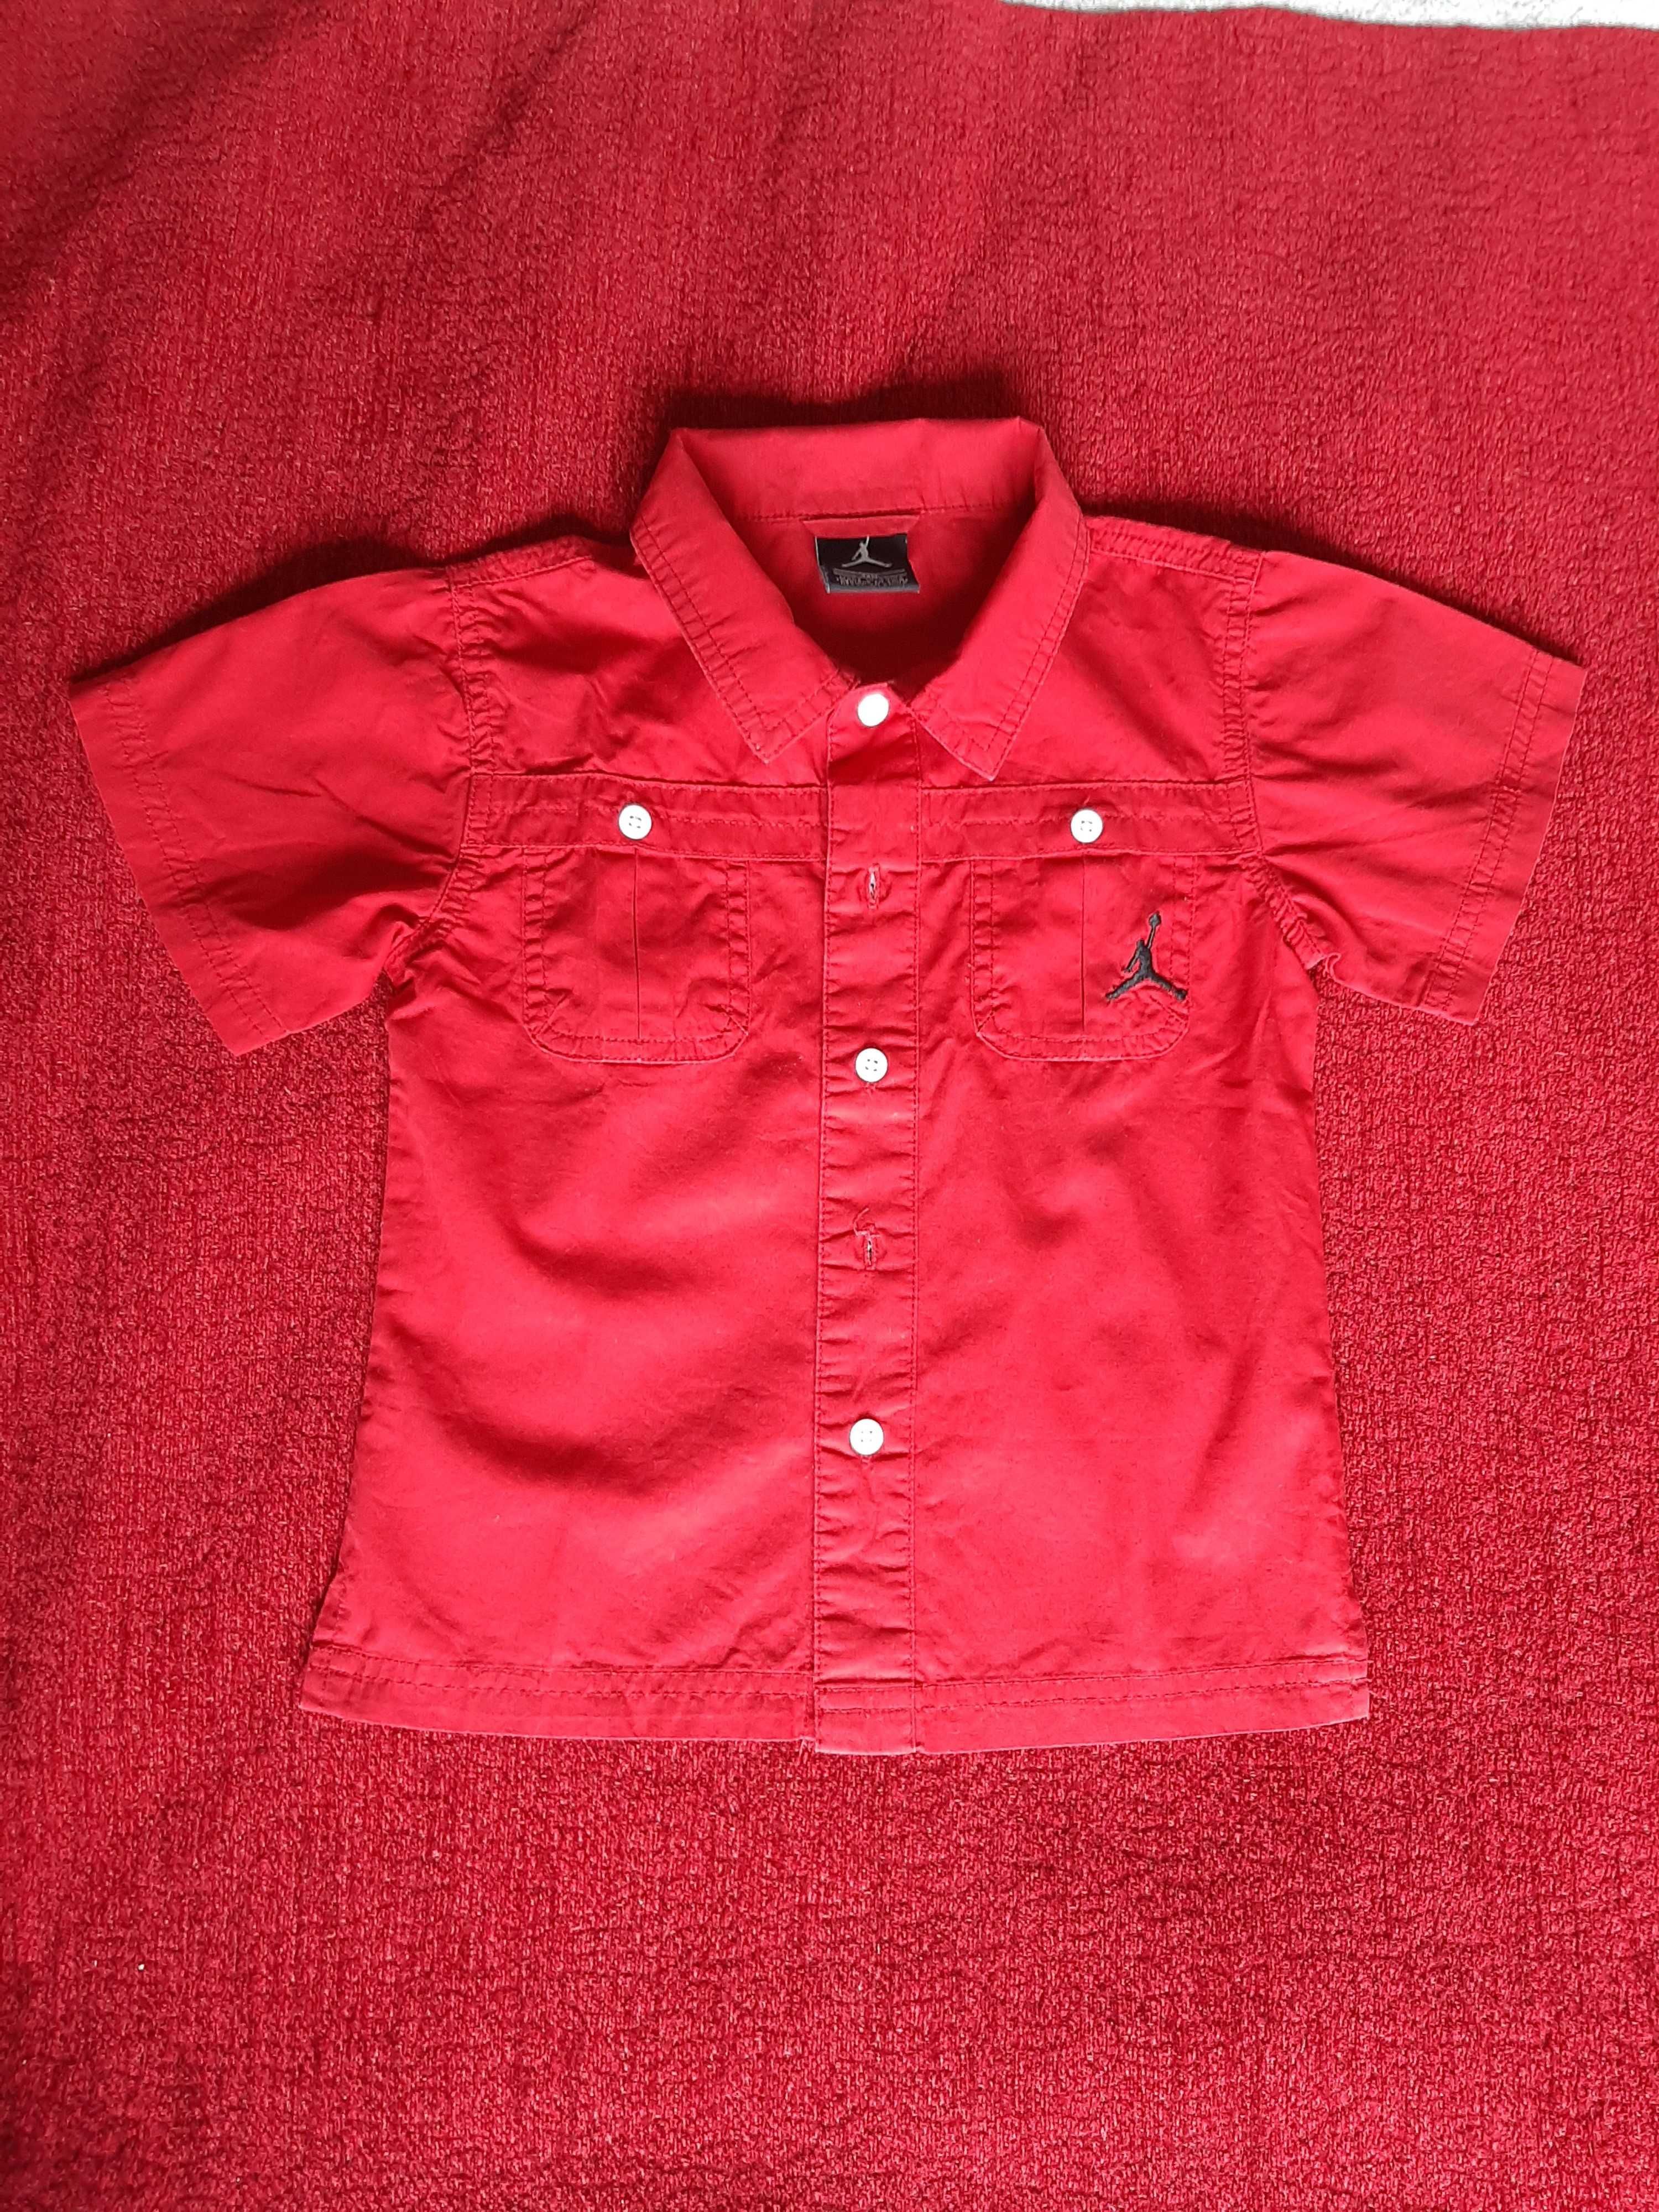 Camisa Vermelha M.Curta 24M (94cm)